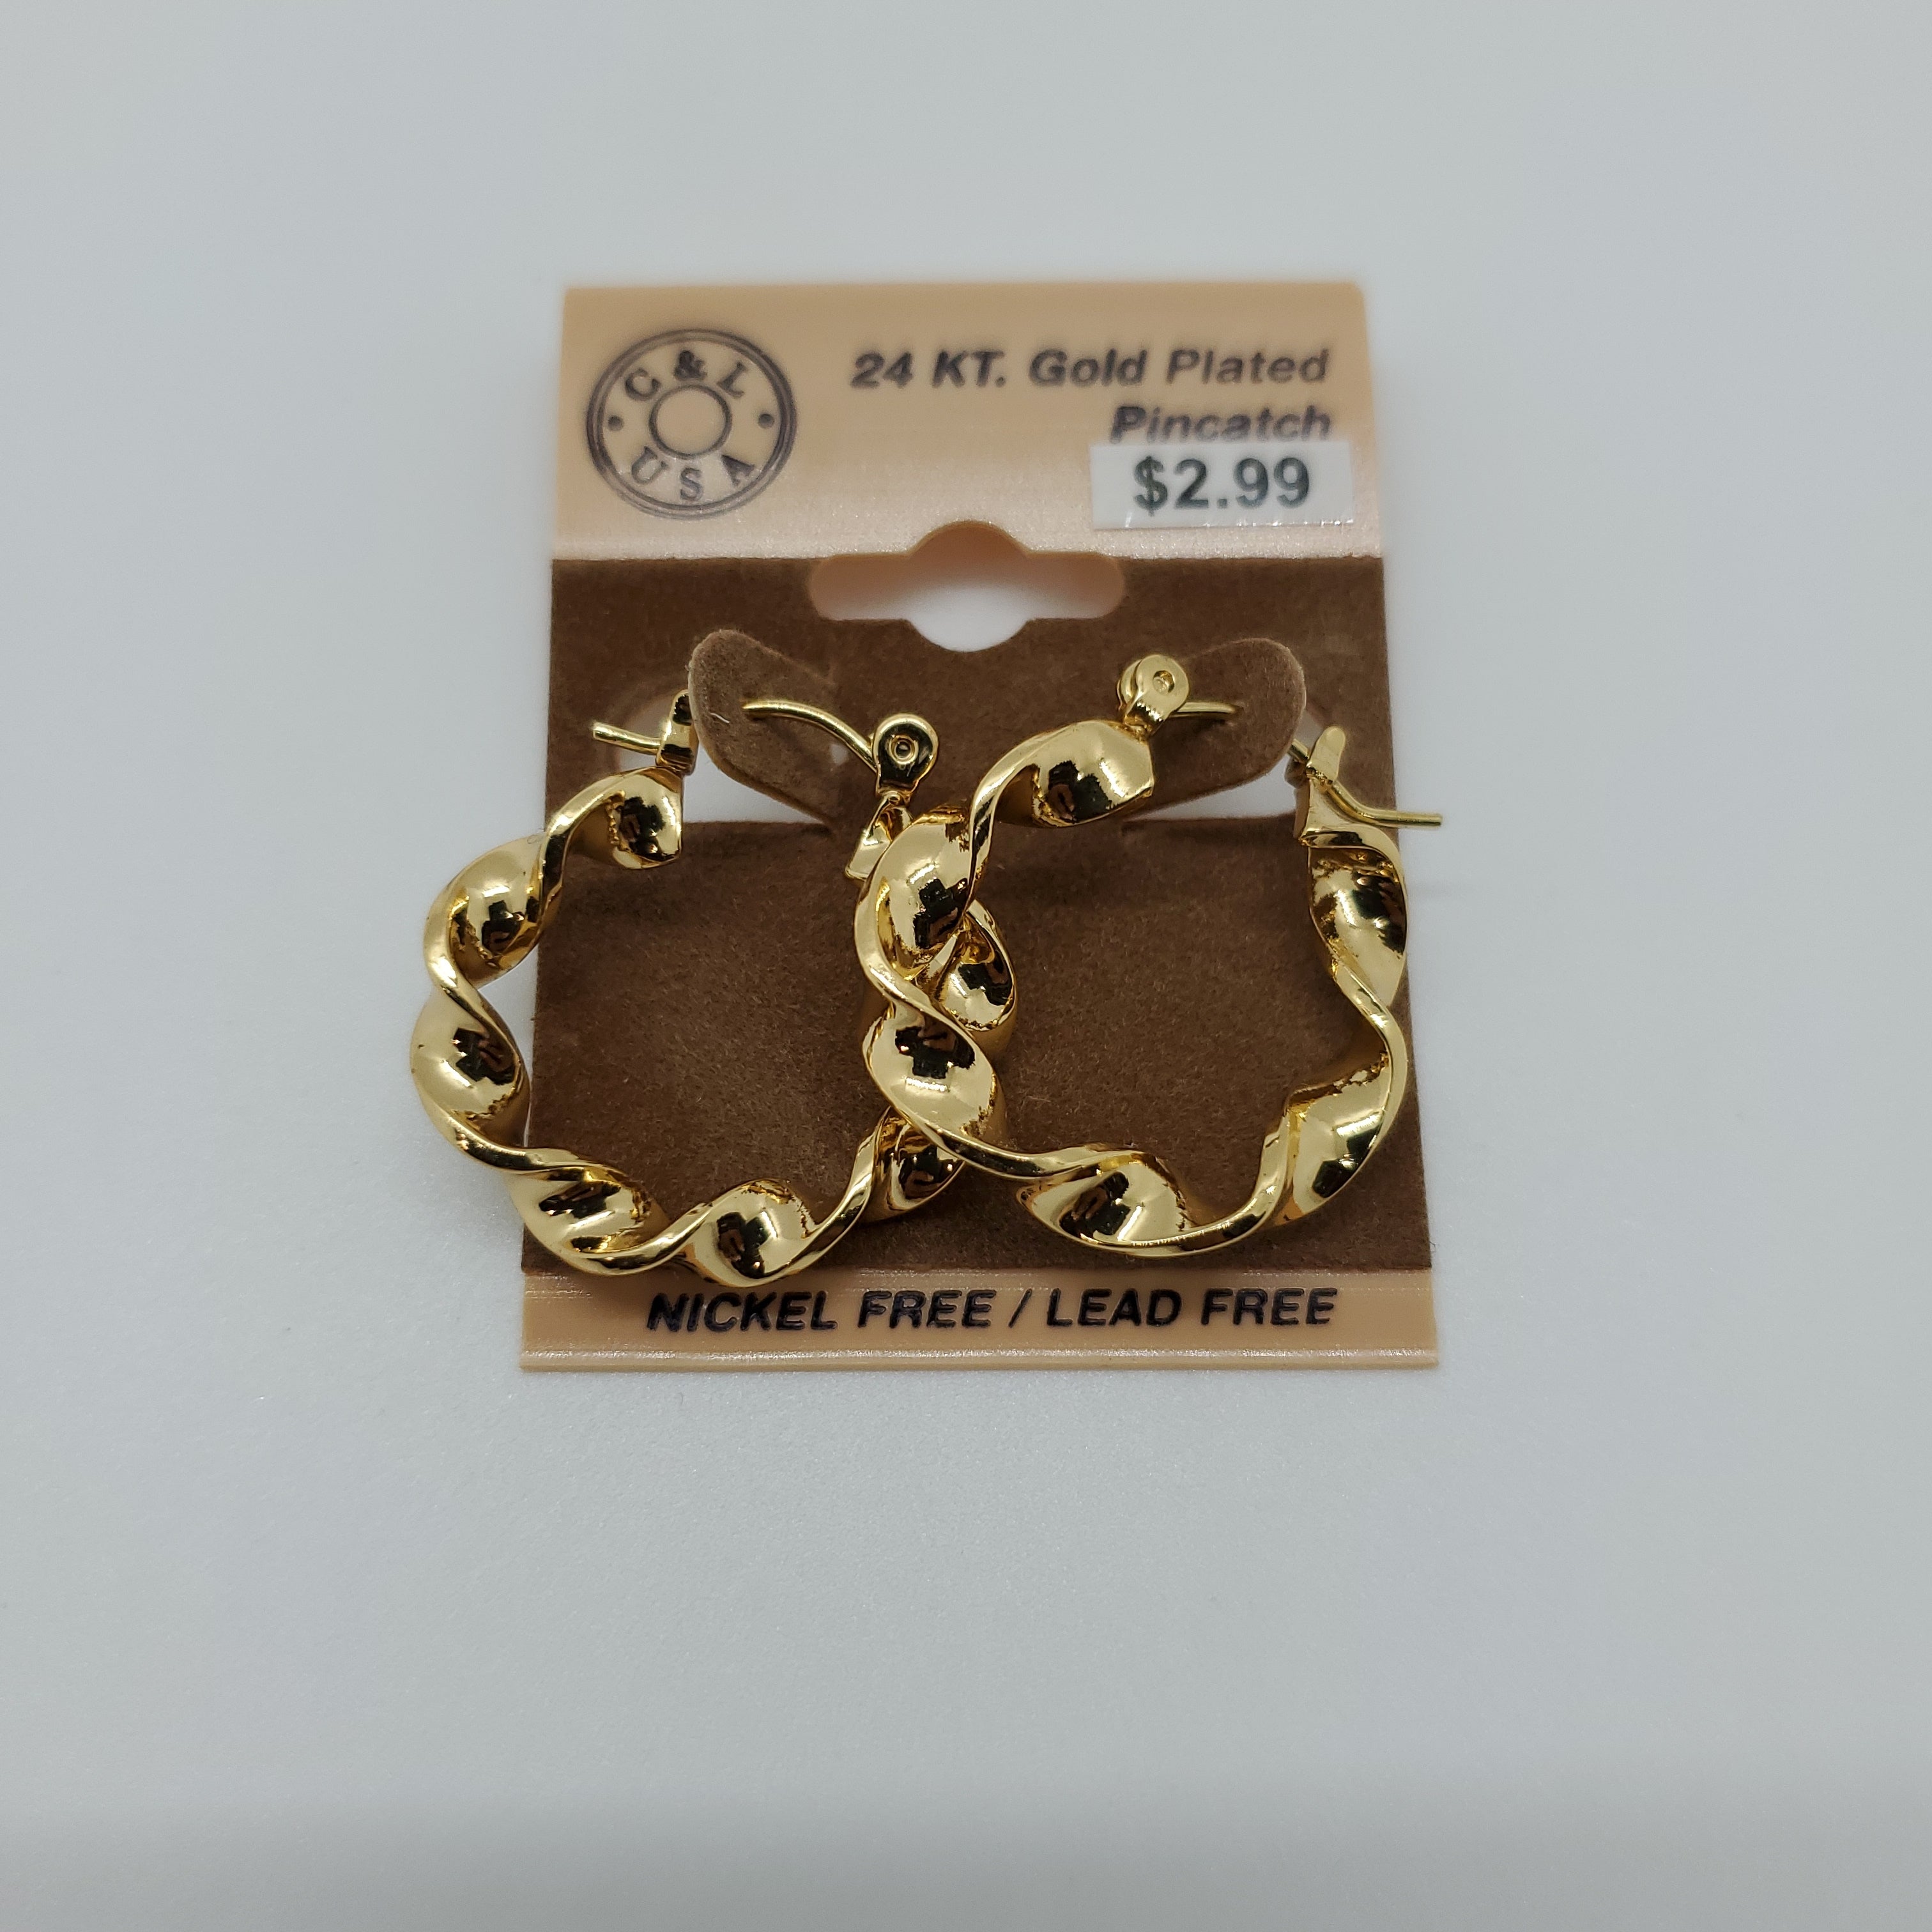 24KT Gold Plated Pincatch Hoop Earrings NPK116 - Beauty Bar & Supply